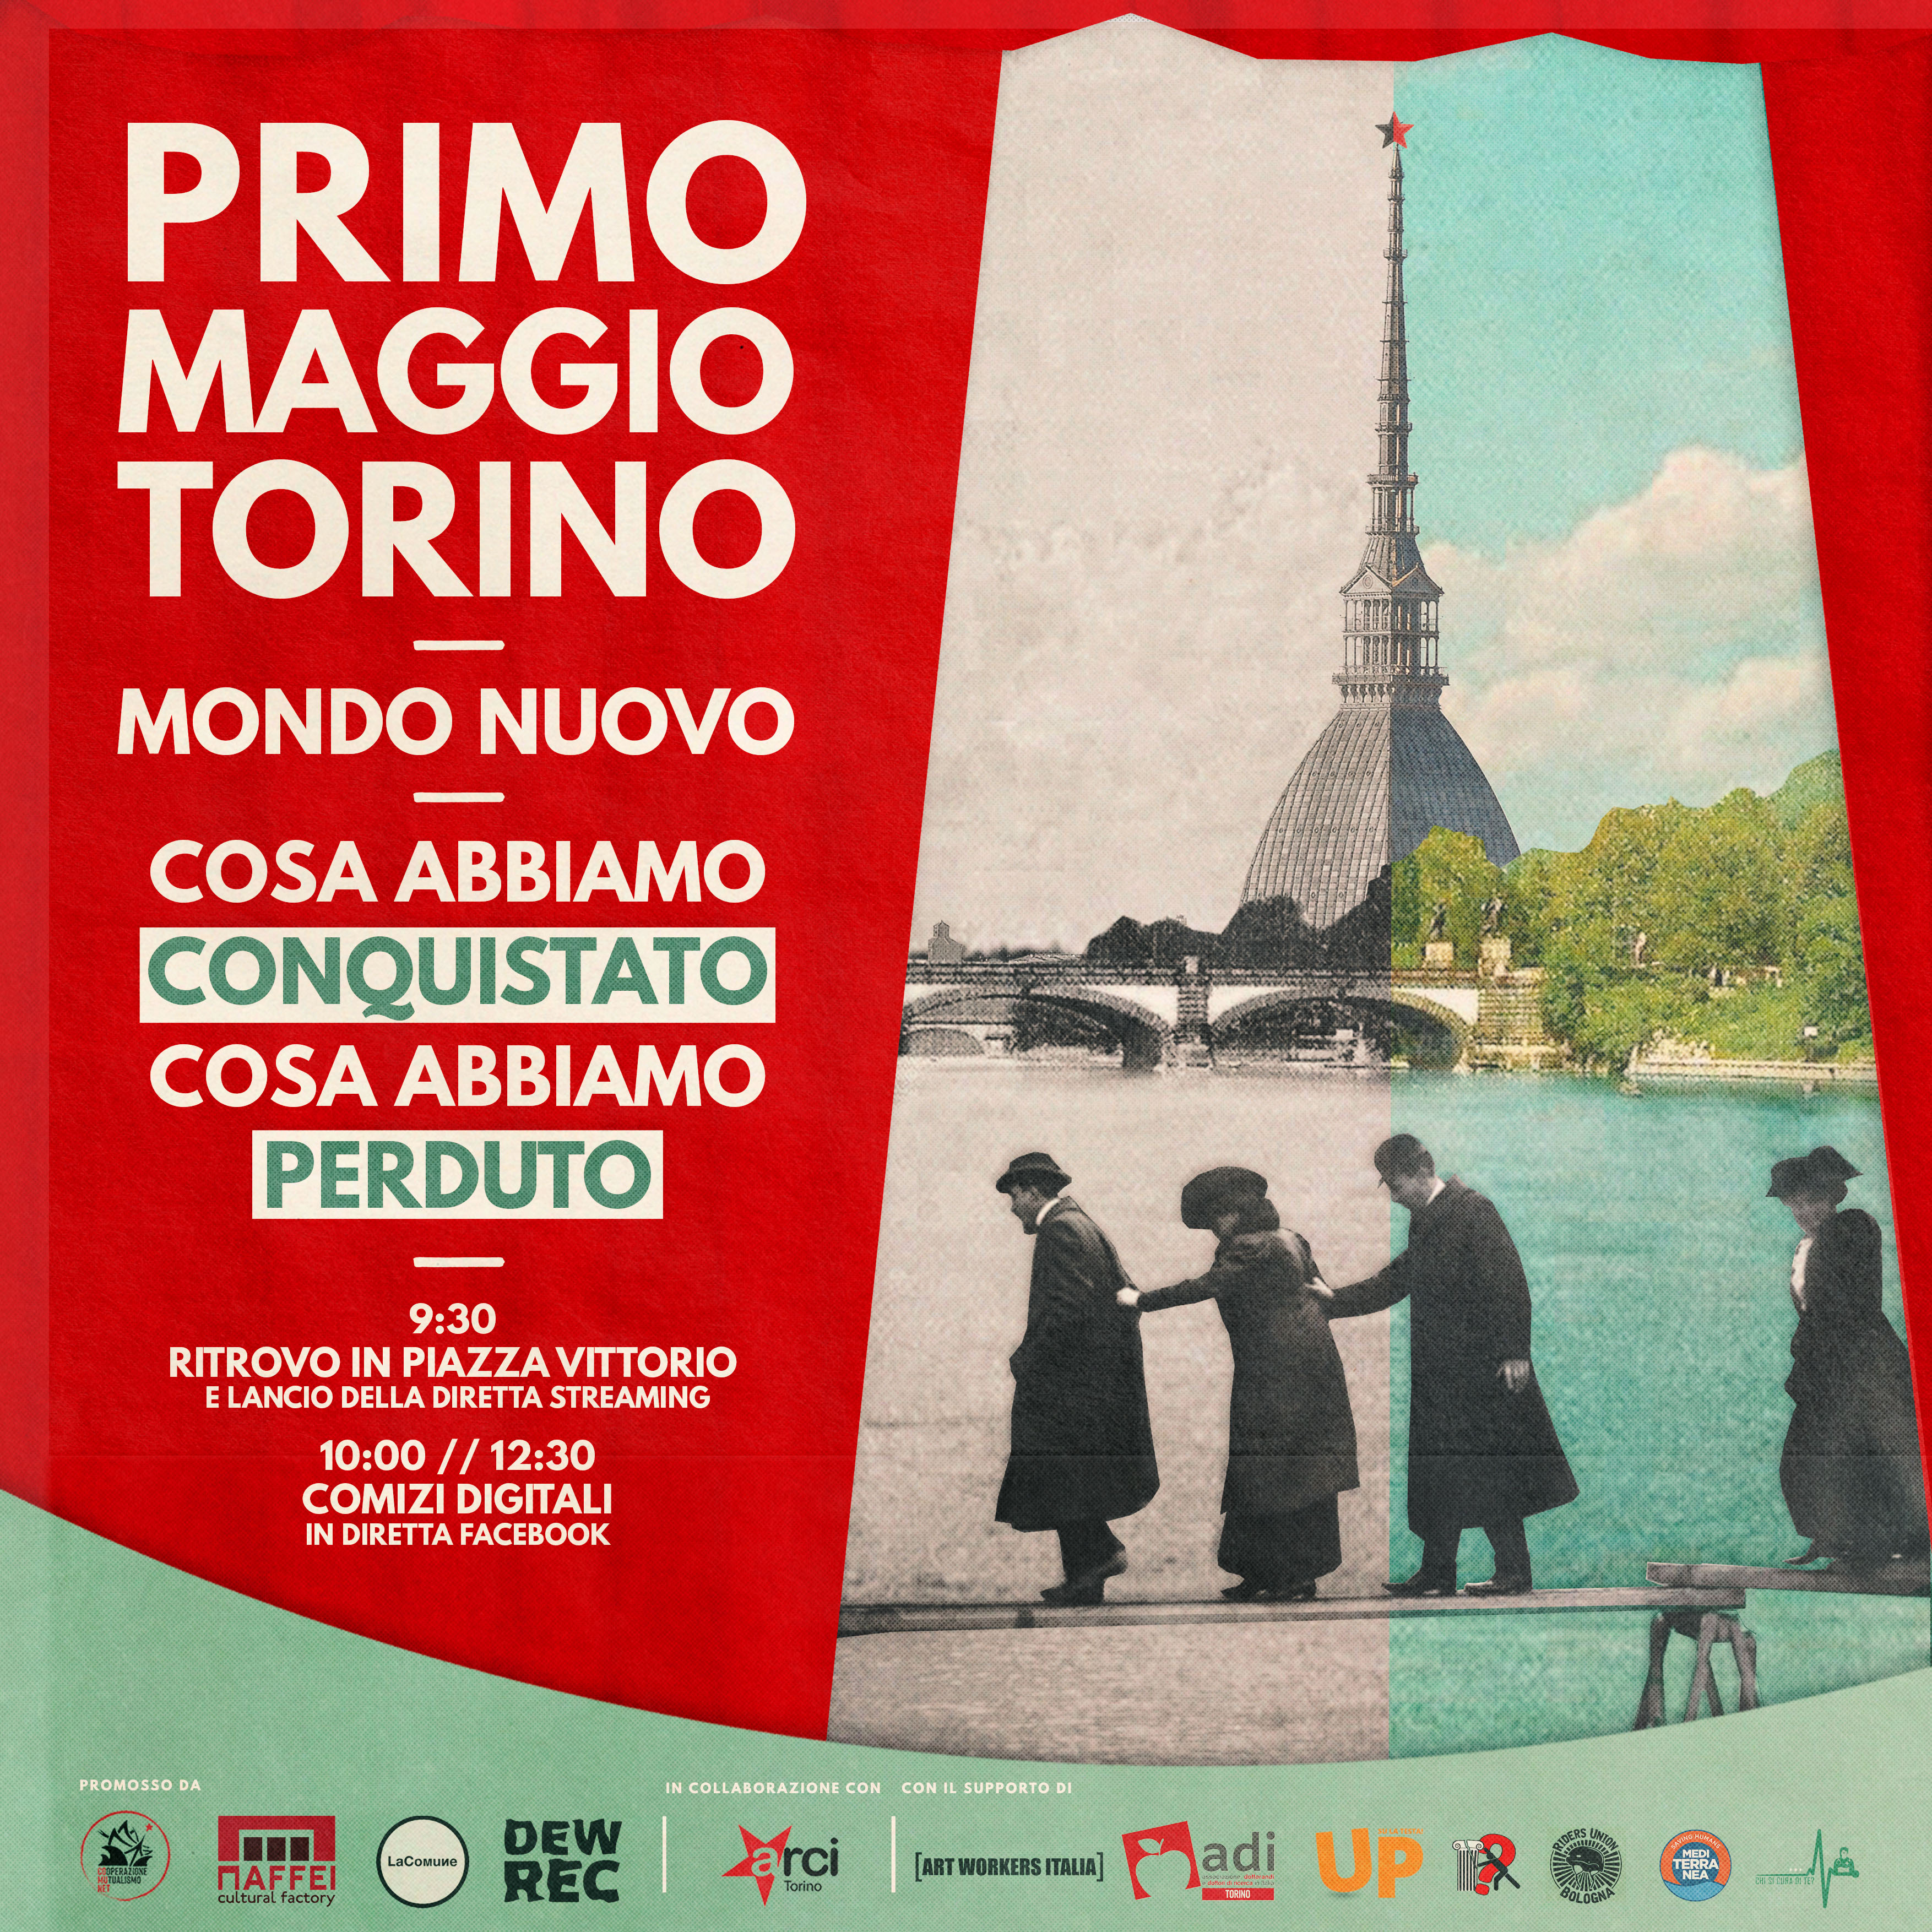 Torna “Mondo Nuovo”, la piazza digitale del 1° Maggio a Torino in diretta Facebook e in collegamento dai luoghi di lavoro